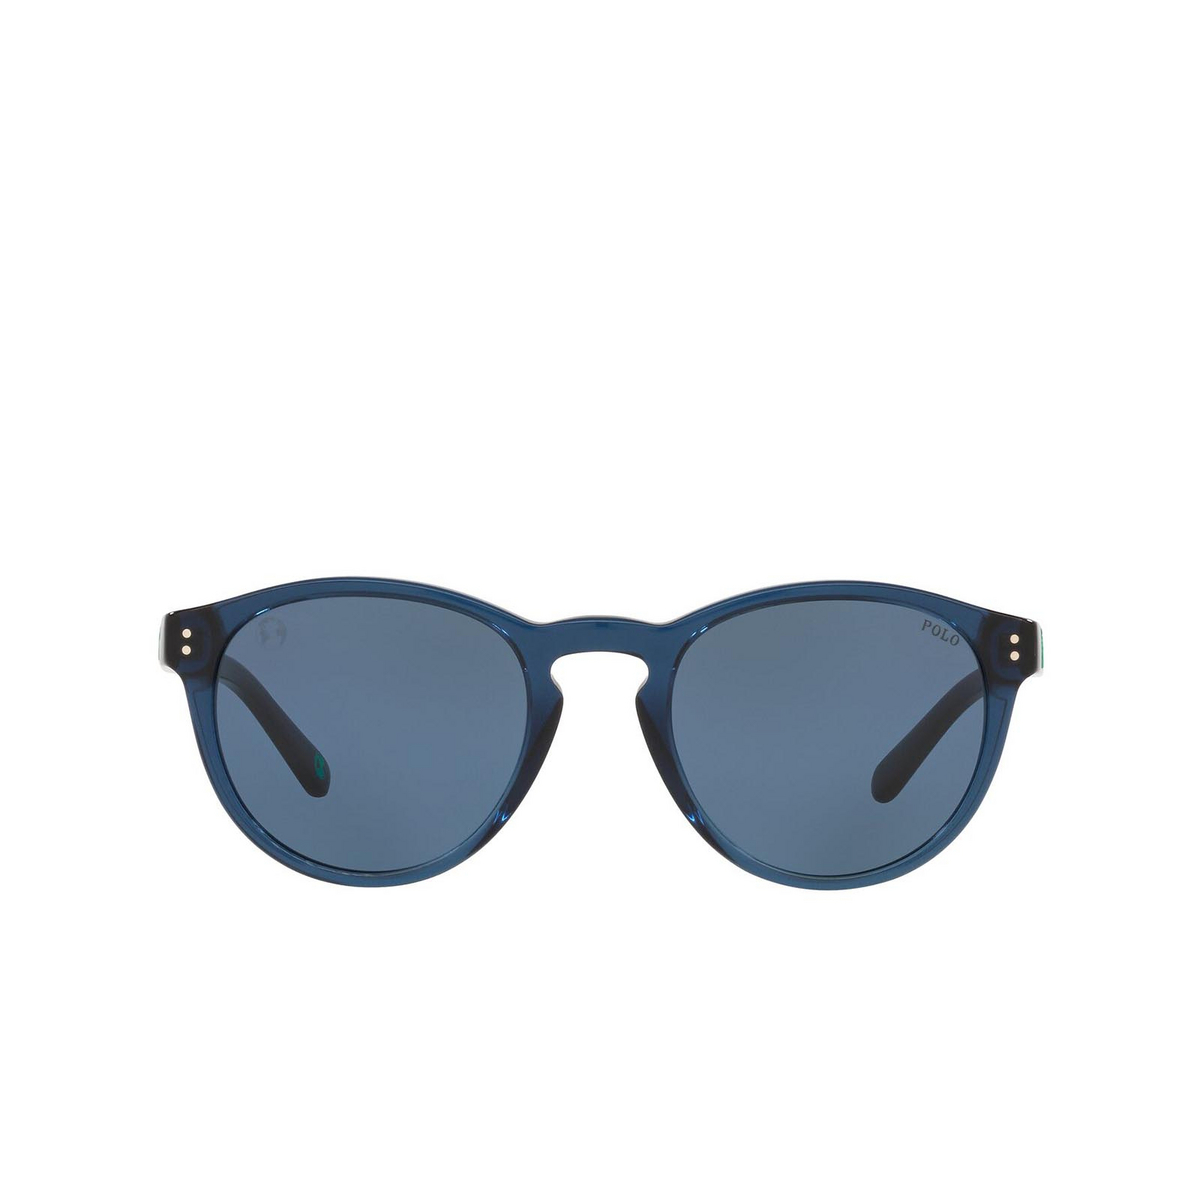 Polo Ralph Lauren® Round Sunglasses: PH4172 color Shiny Transparent Blue 595580 - front view.